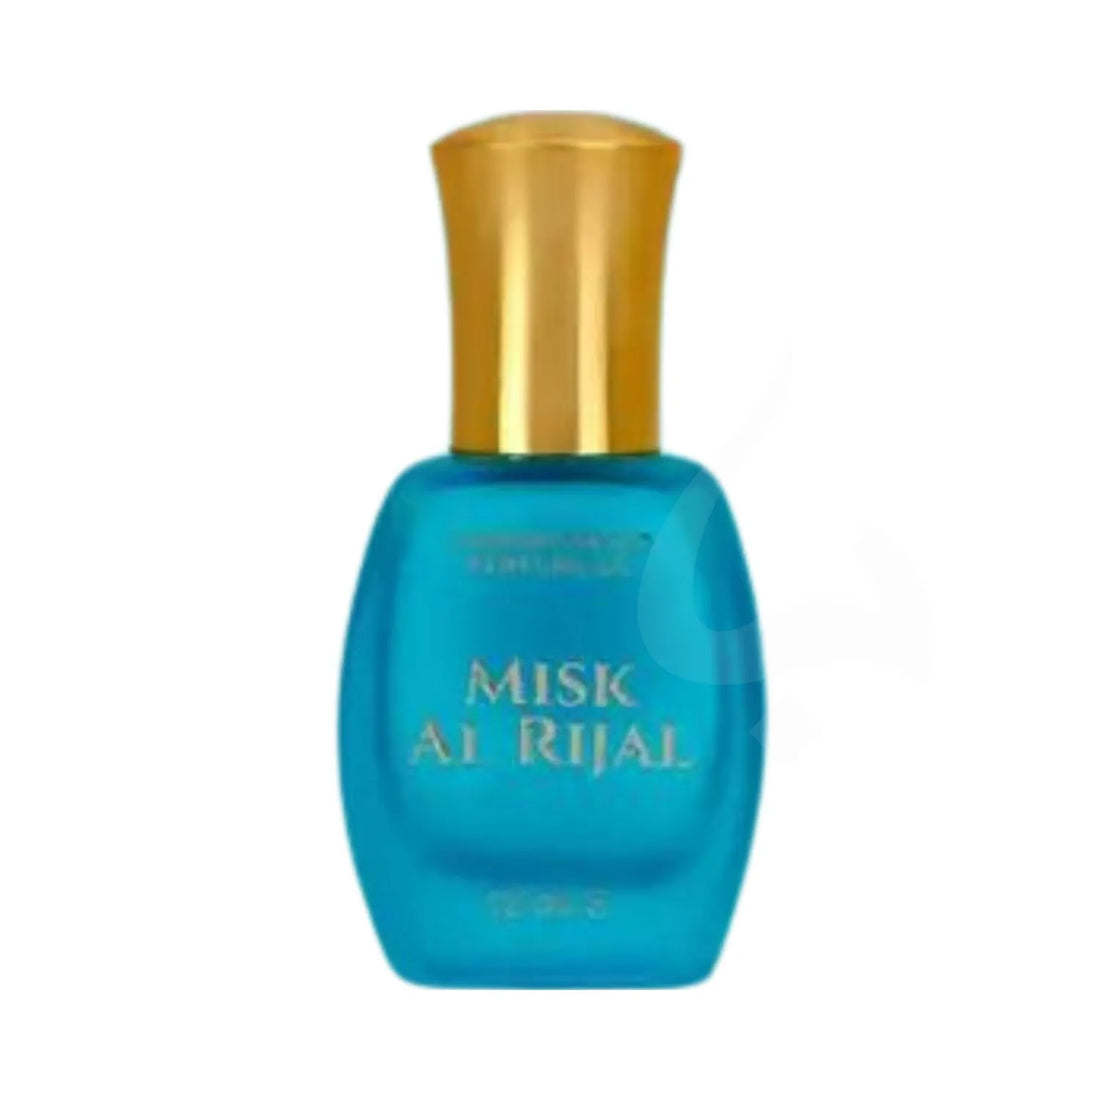 Misk Al Rijal Perfume Oil Bottle